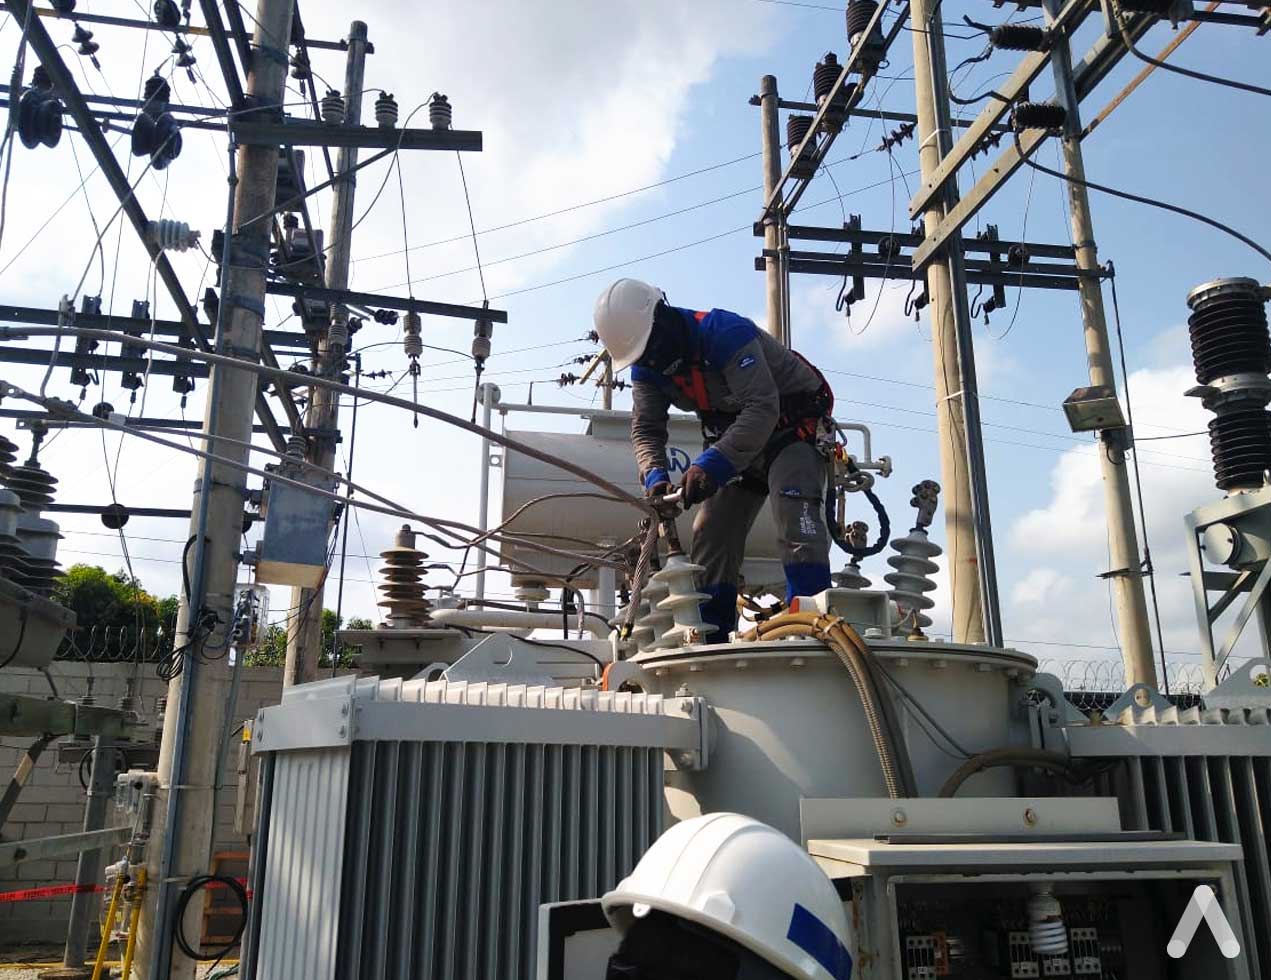 La empresa Air-e continua en su compromiso de optimizar el servicio de energía y mejorar la calidad vida de sus clientes en Santa Marta y municipios del departamento del Magdalena.